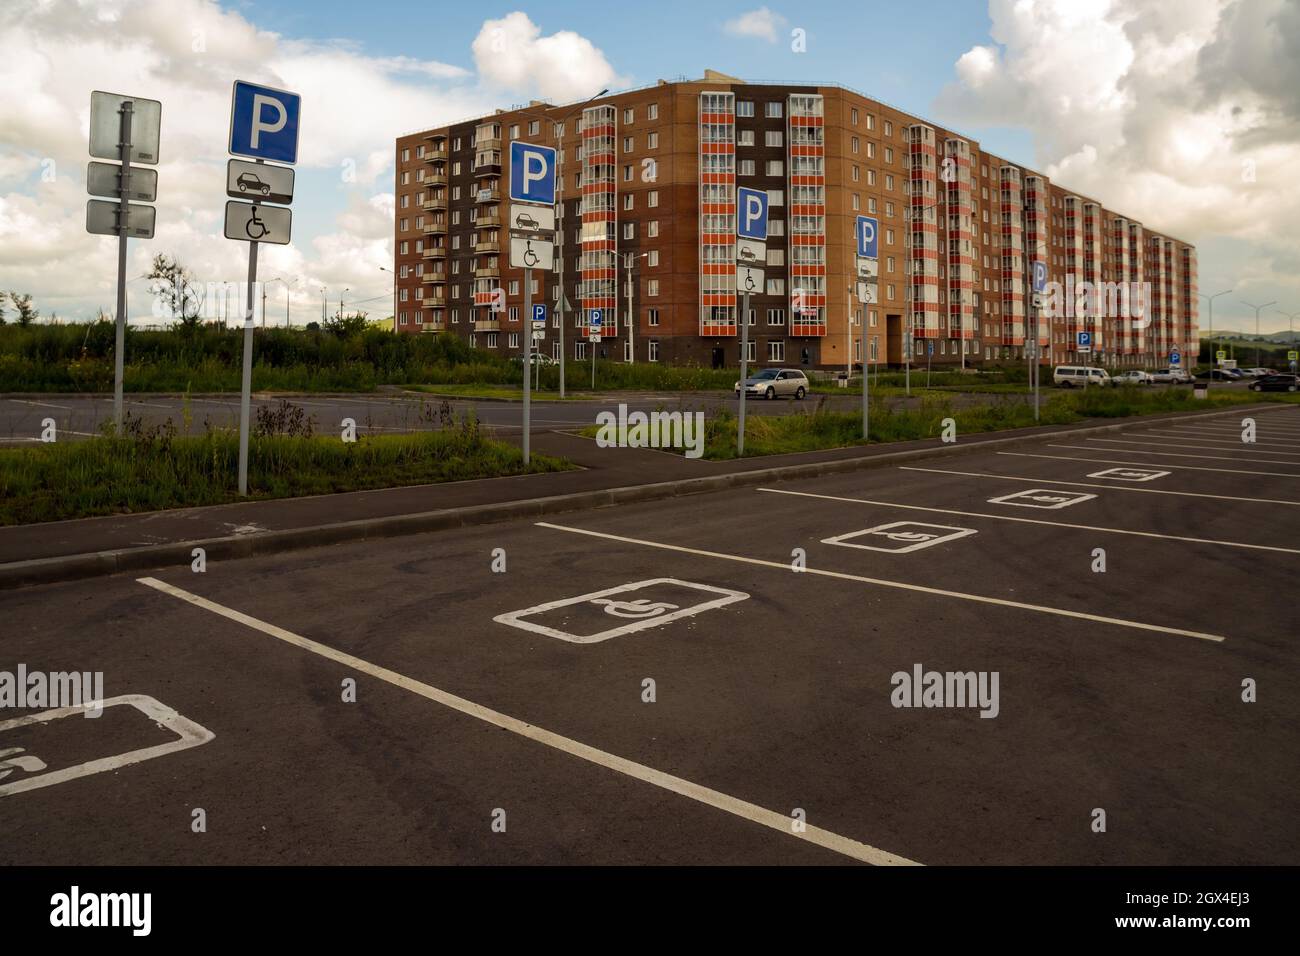 Places de stationnement pour personnes handicapées avec panneaux de signalisation routière, délimitées sur l'asphalte, en arrière-plan d'un bâtiment résidentiel. Banque D'Images